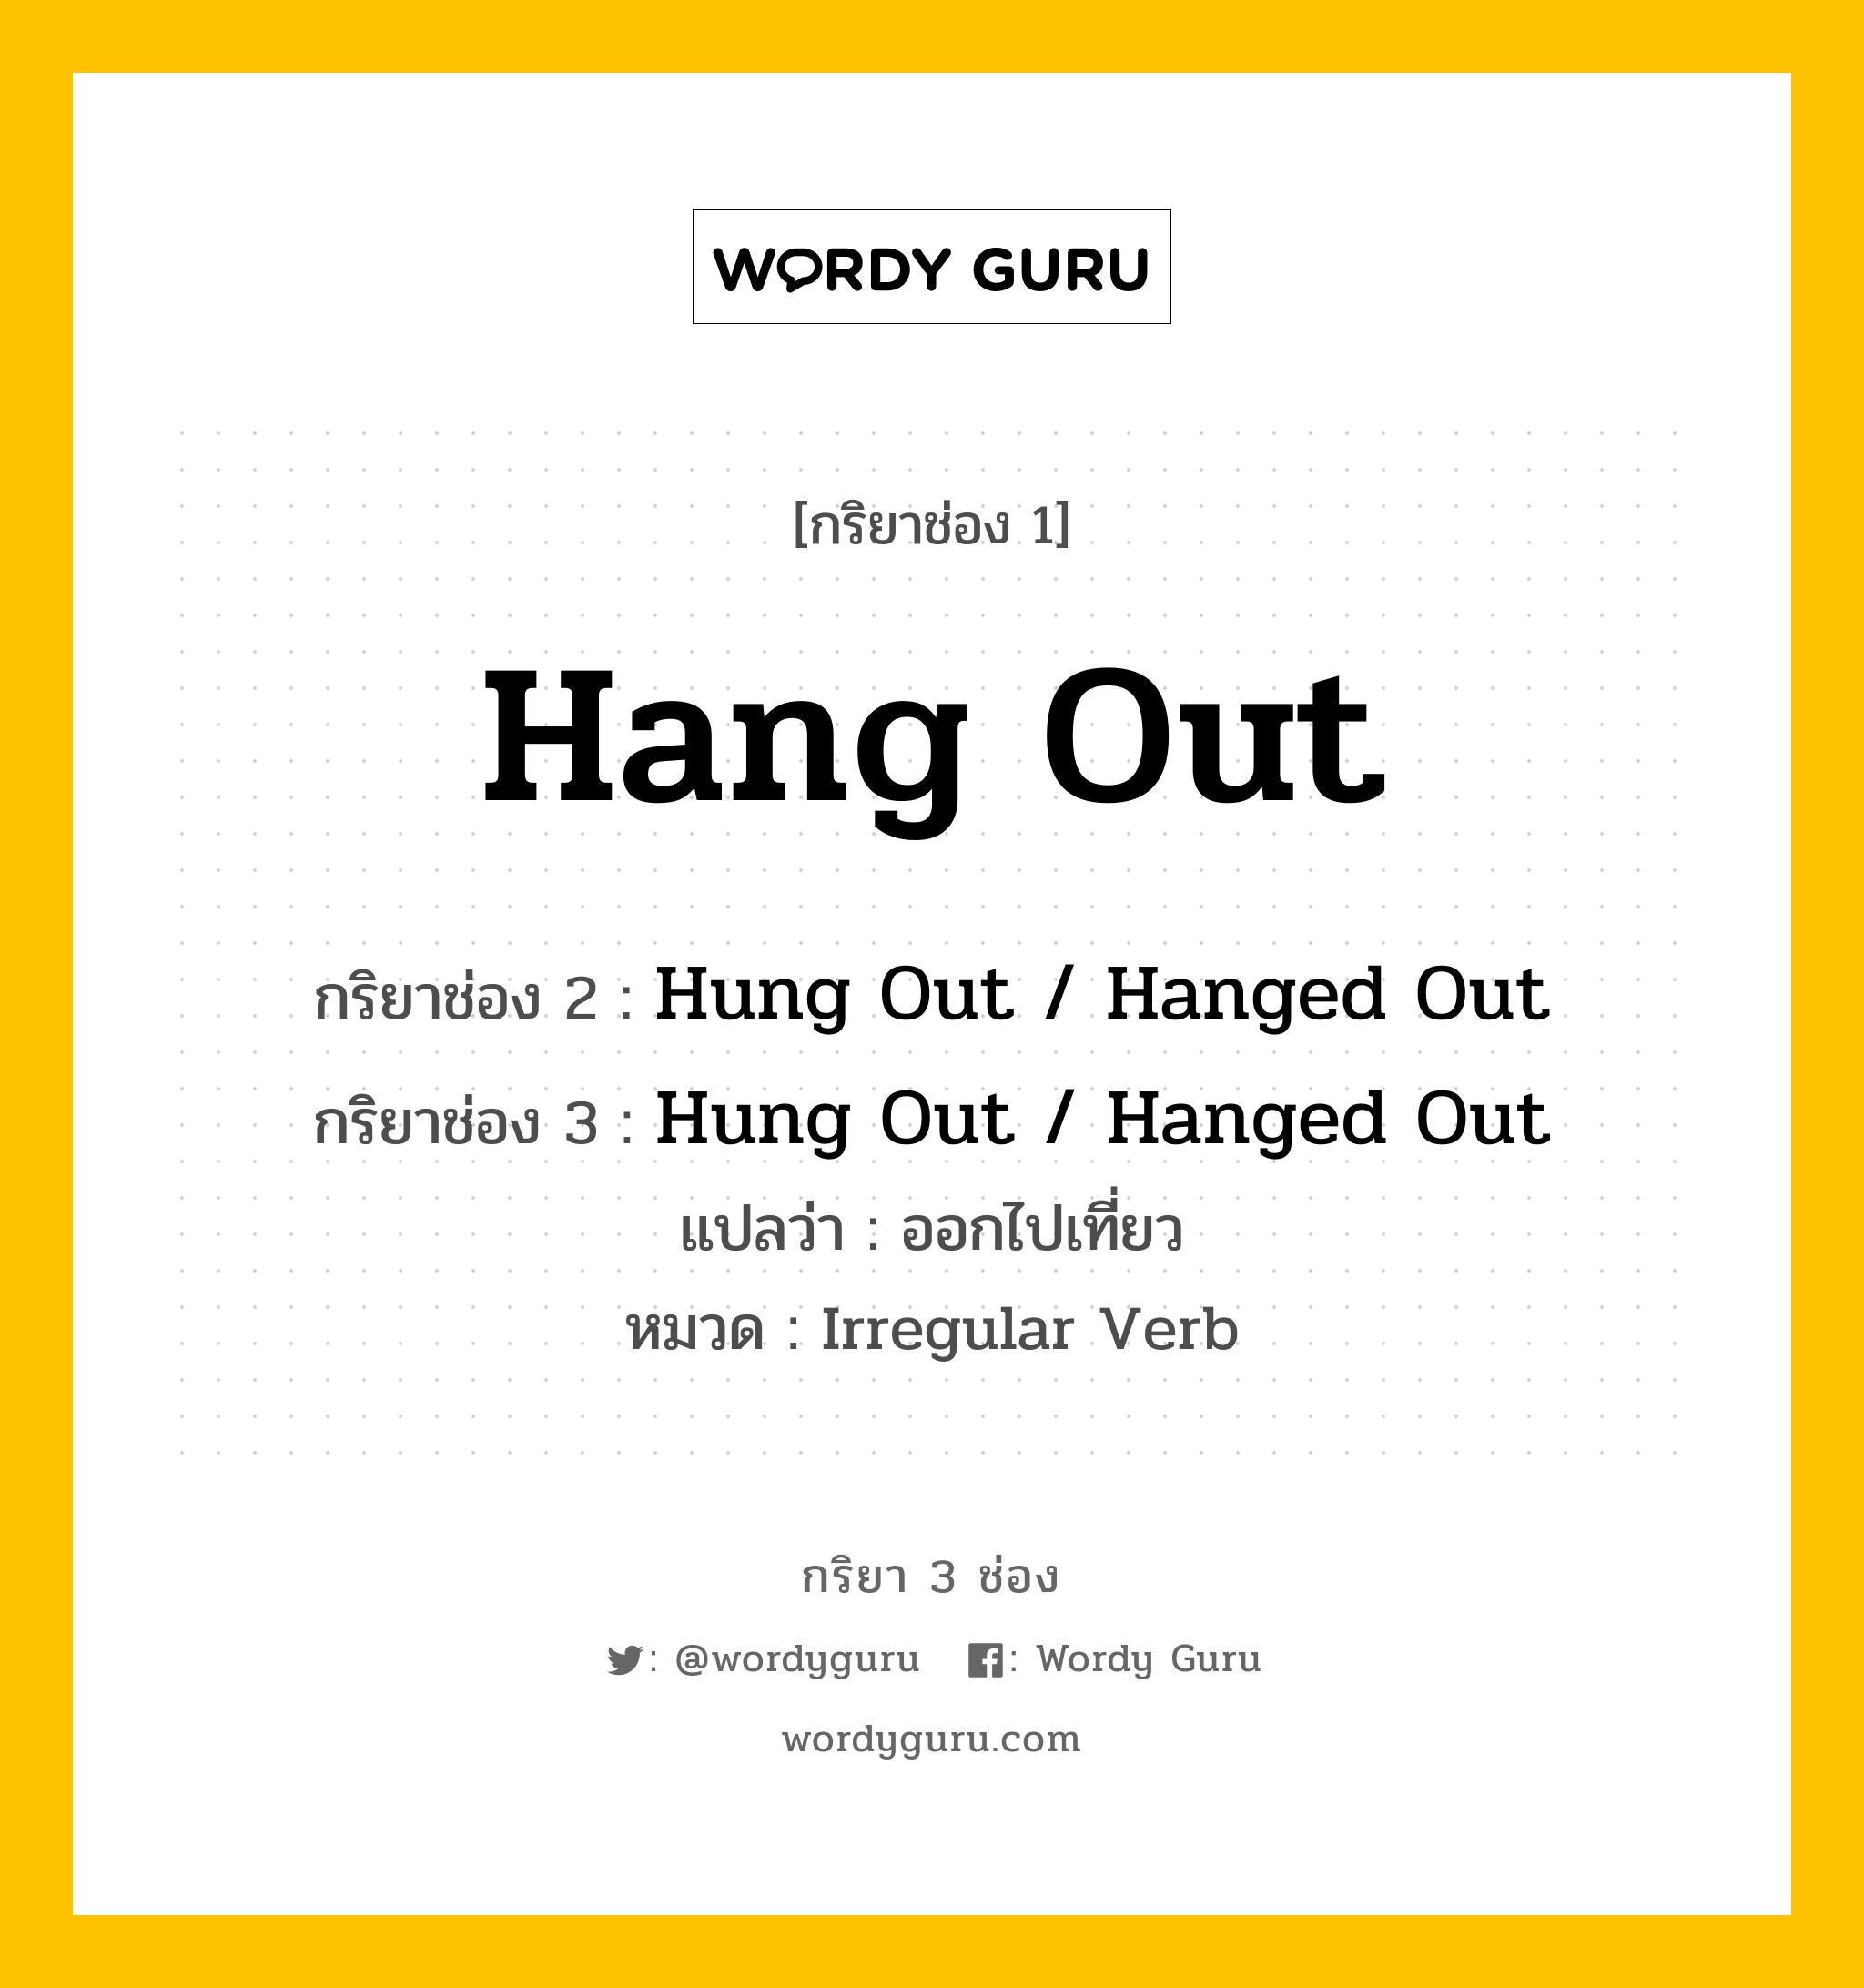 กริยา 3 ช่อง: Hang Out ช่อง 2 Hang Out ช่อง 3 คืออะไร, กริยาช่อง 1 Hang Out กริยาช่อง 2 Hung Out / Hanged Out กริยาช่อง 3 Hung Out / Hanged Out แปลว่า ออกไปเที่ยว หมวด Irregular Verb หมวด Irregular Verb